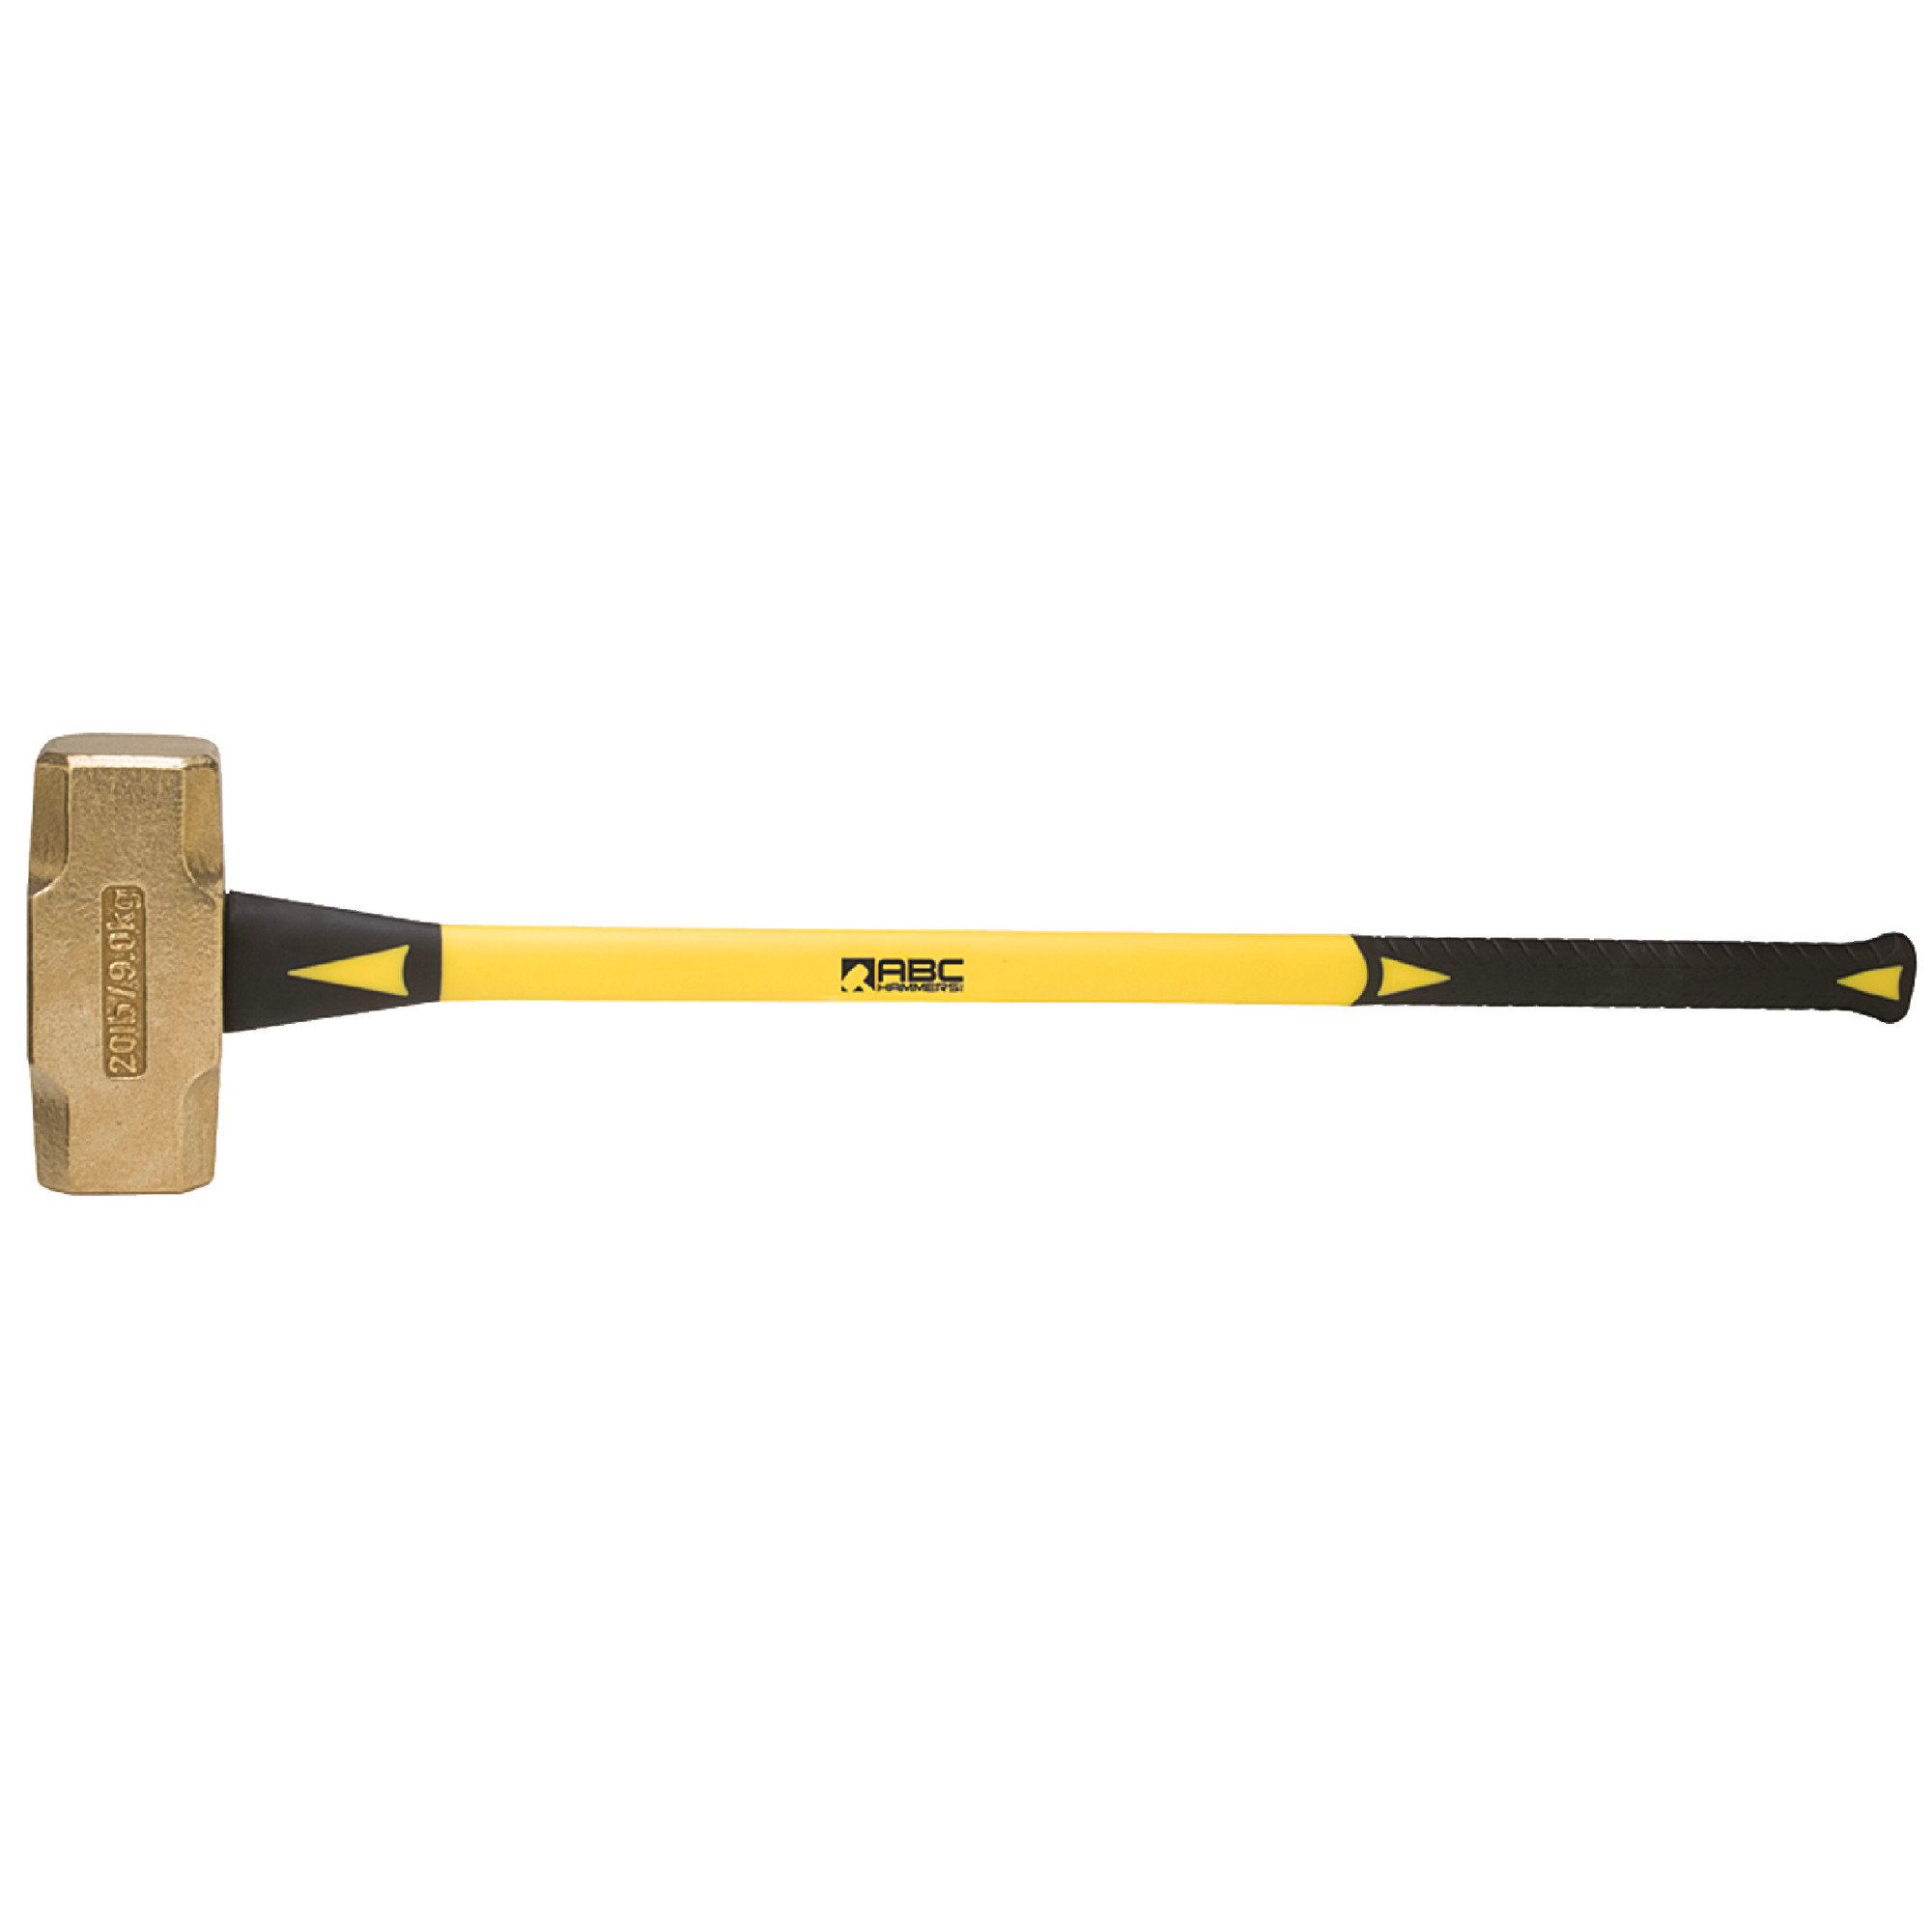 Fiberglass Brass Sledge Hammer